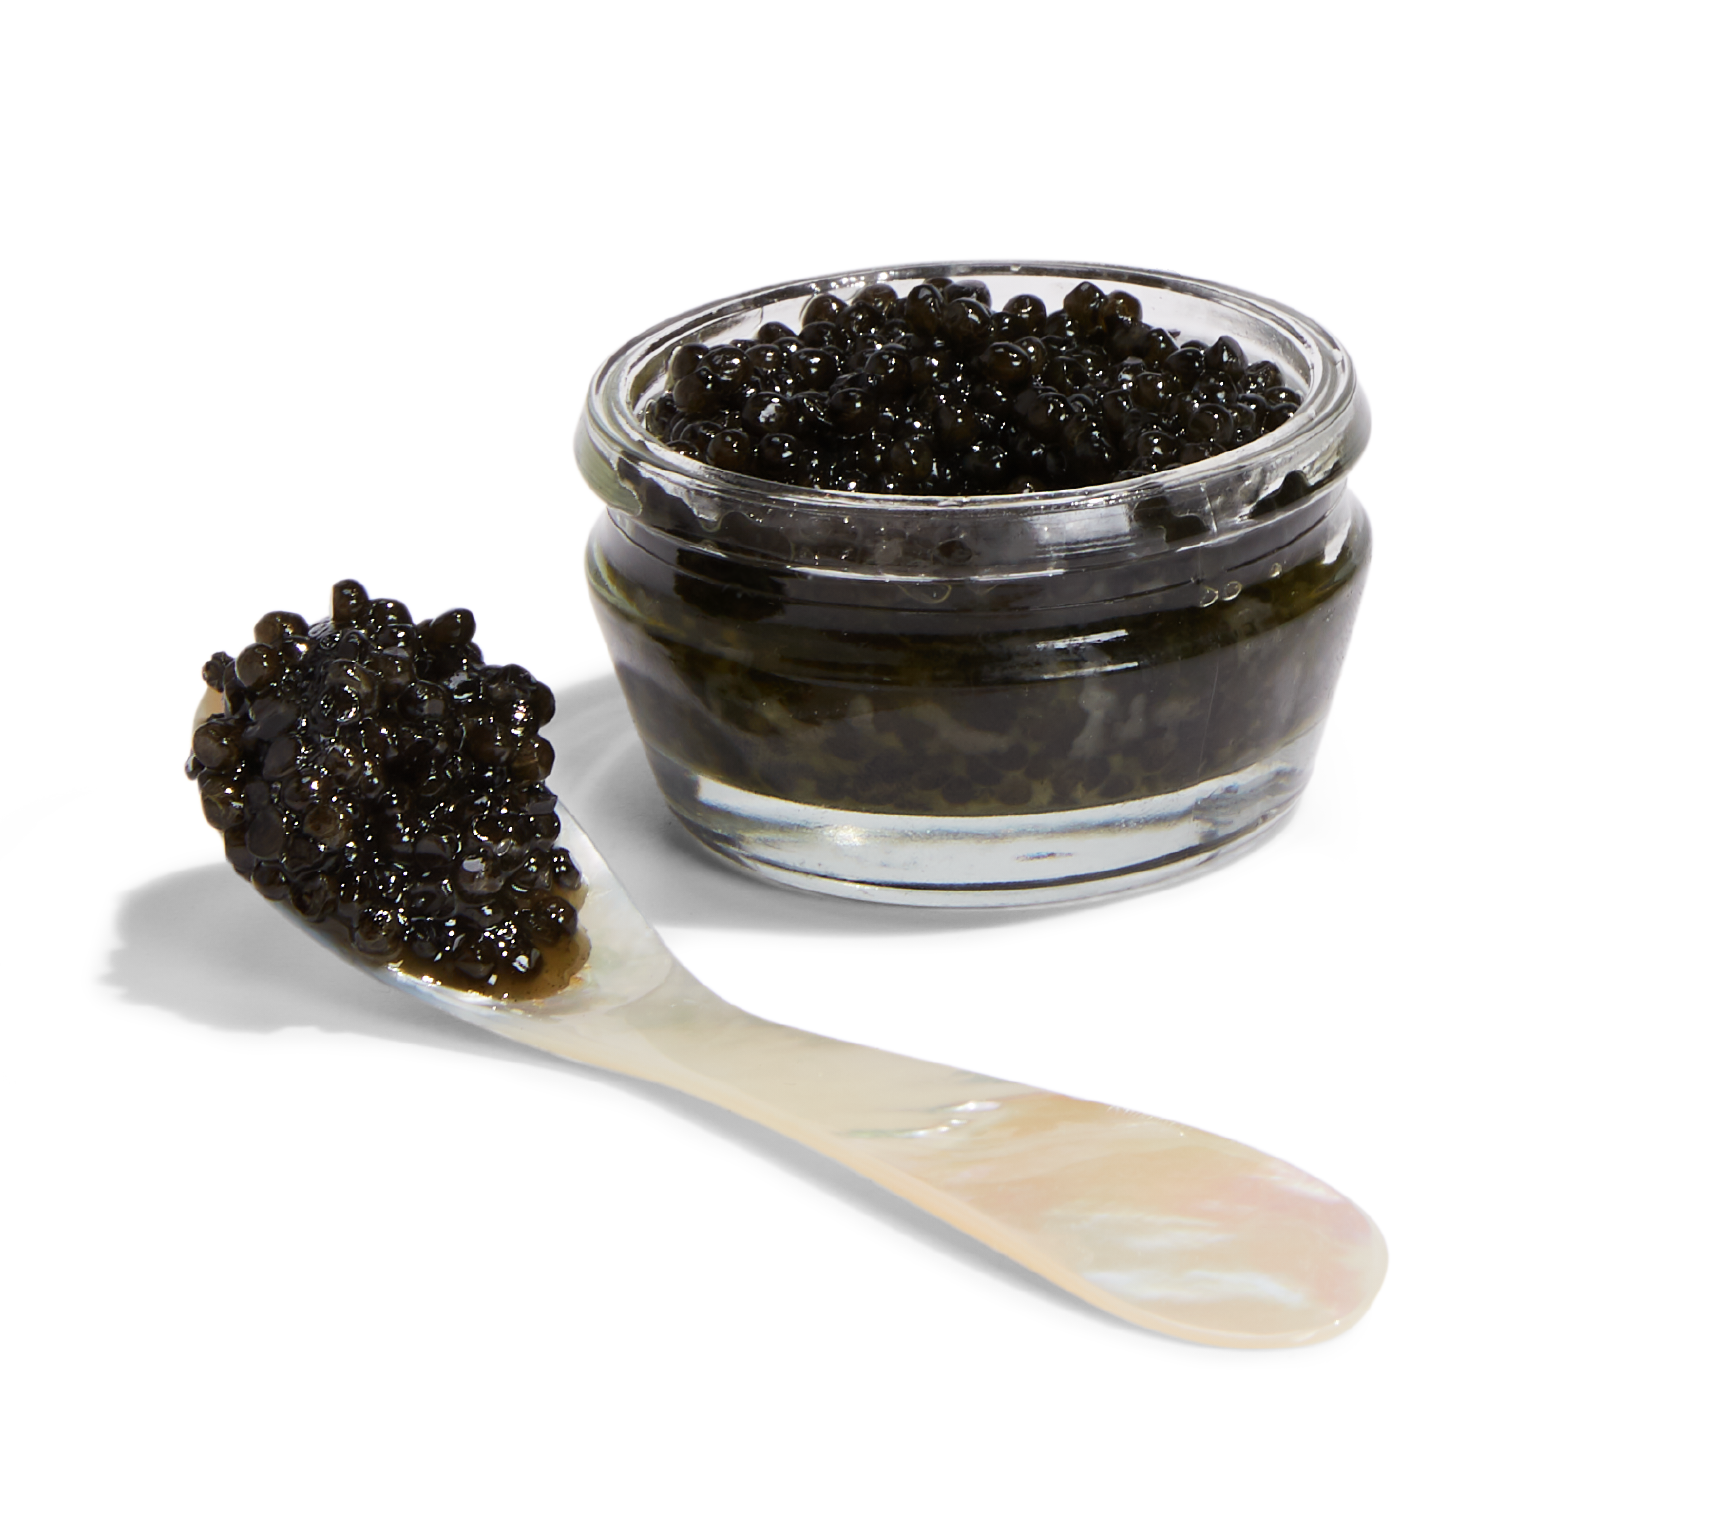 Caviar in spoon